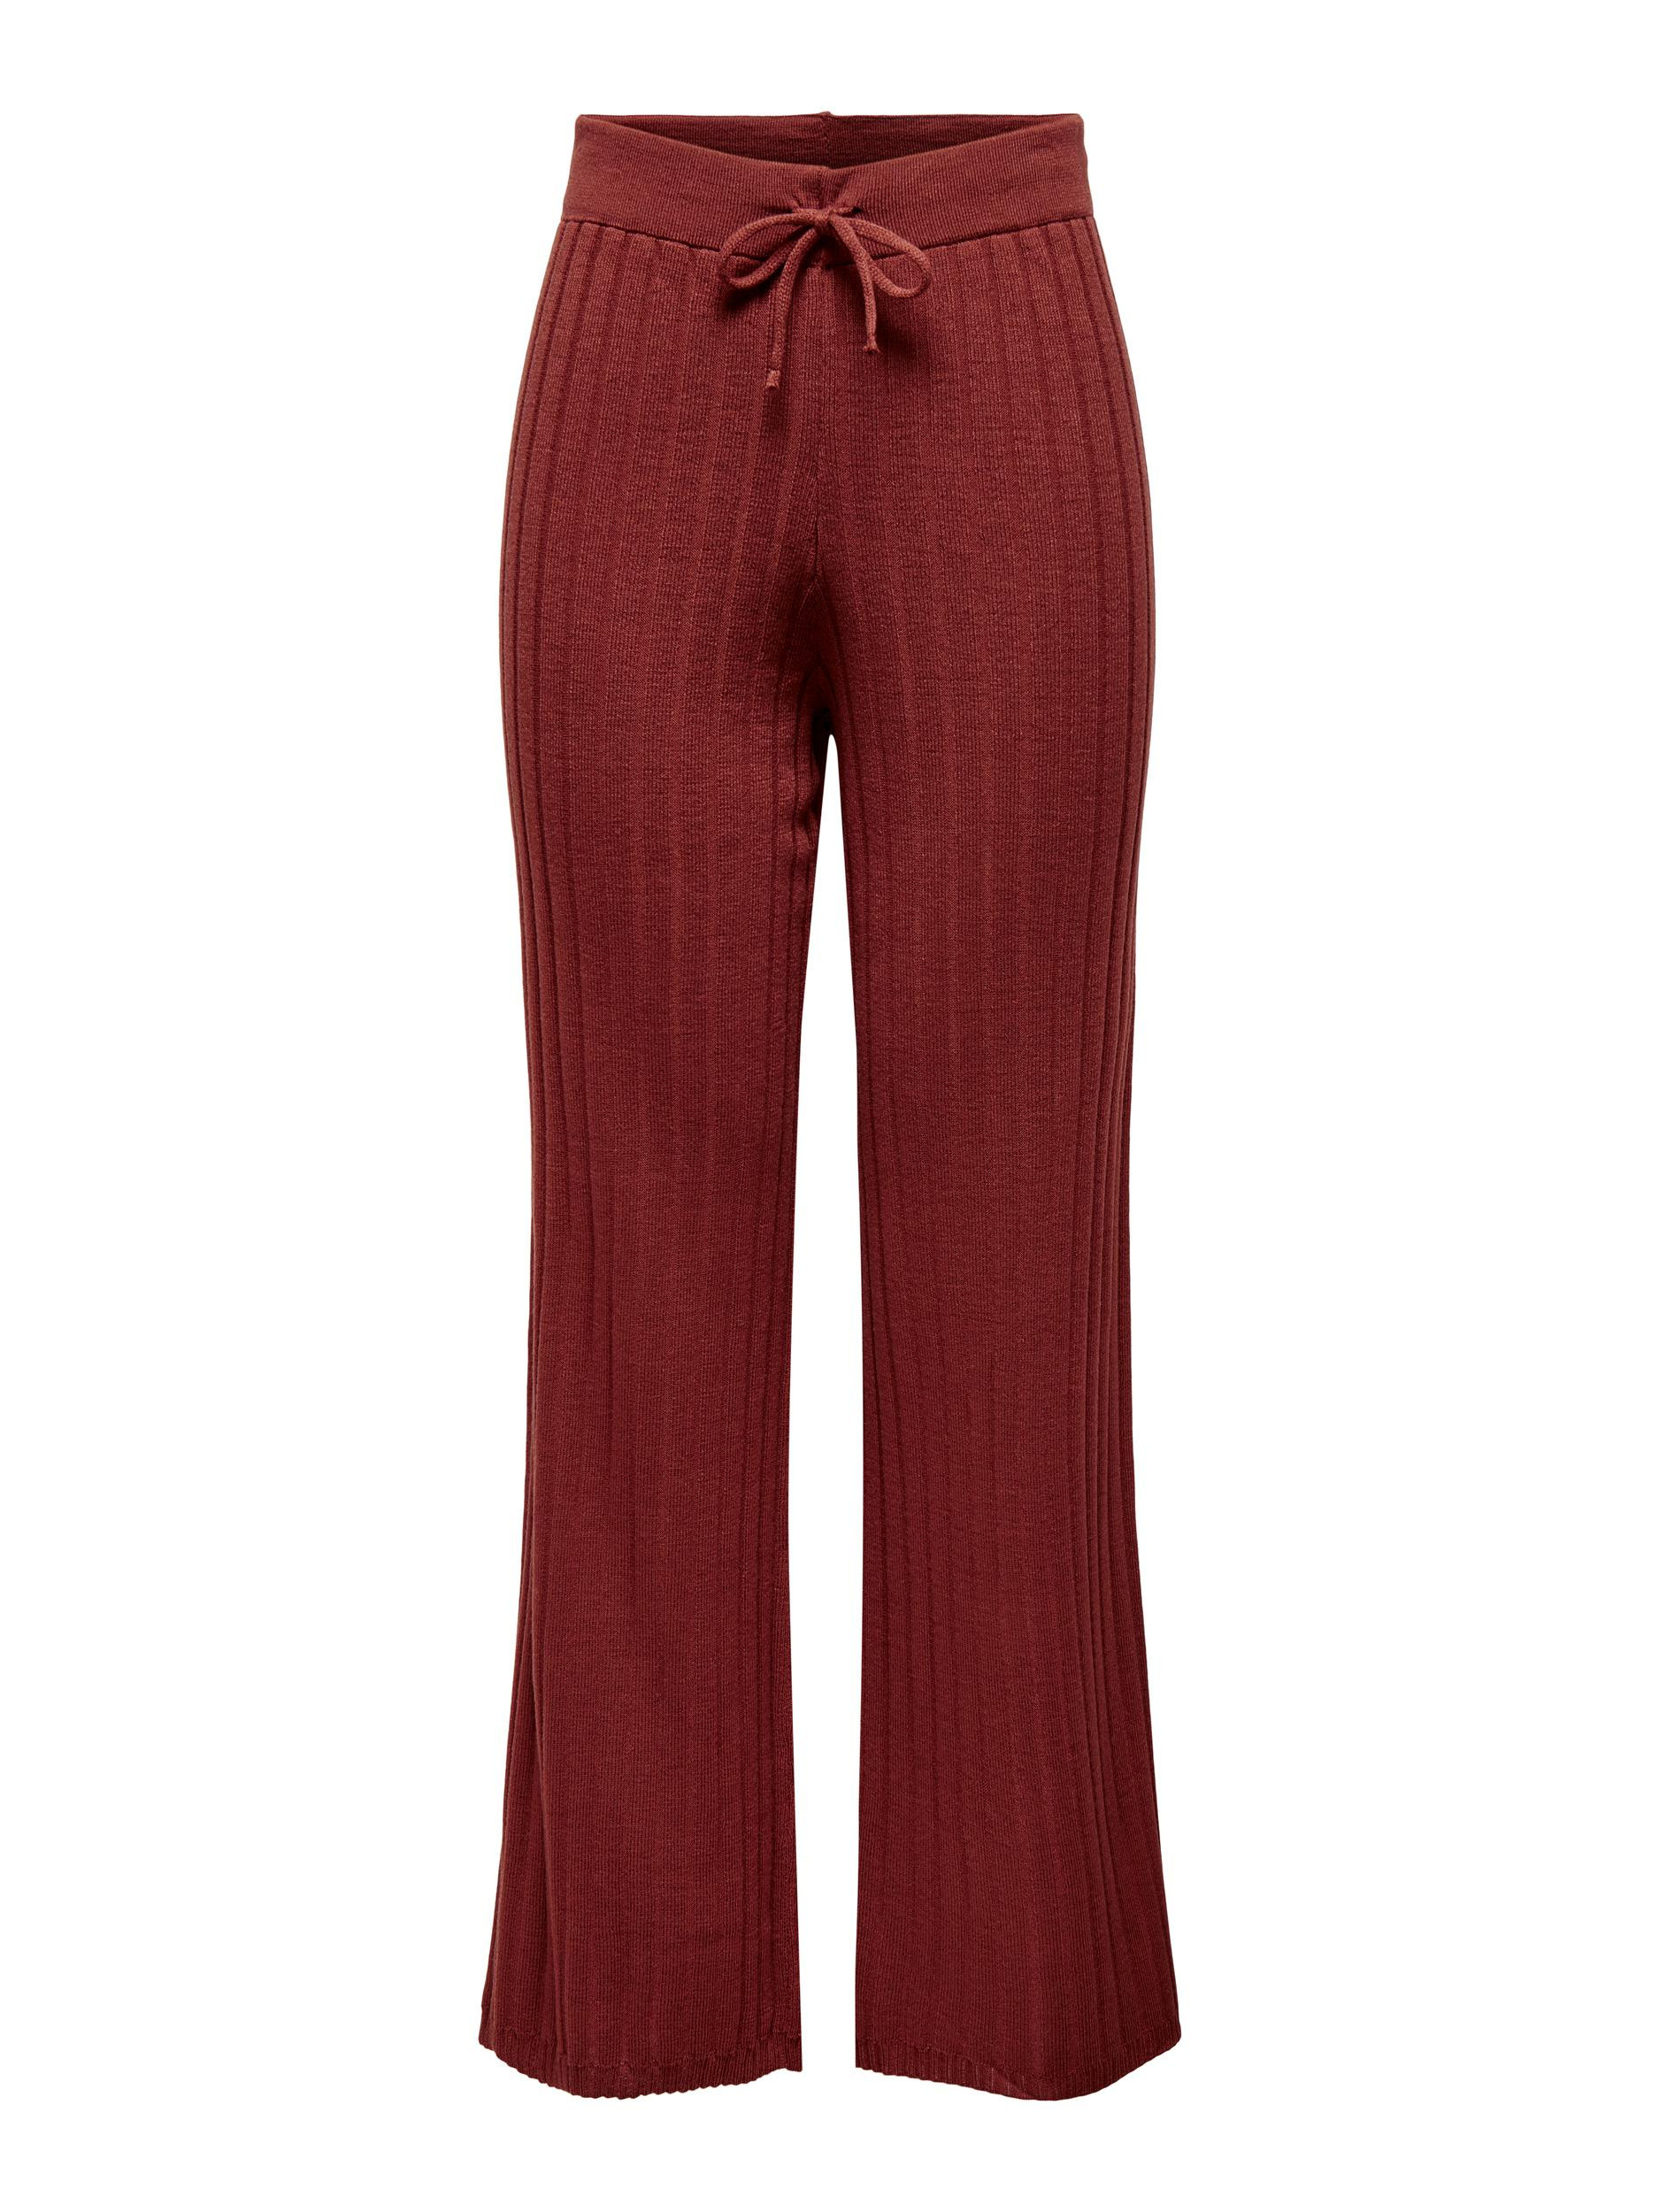 Брюки с завышенной талией Only, красный шорты женские летние с завышенной талией с поясом и широкими штанинами